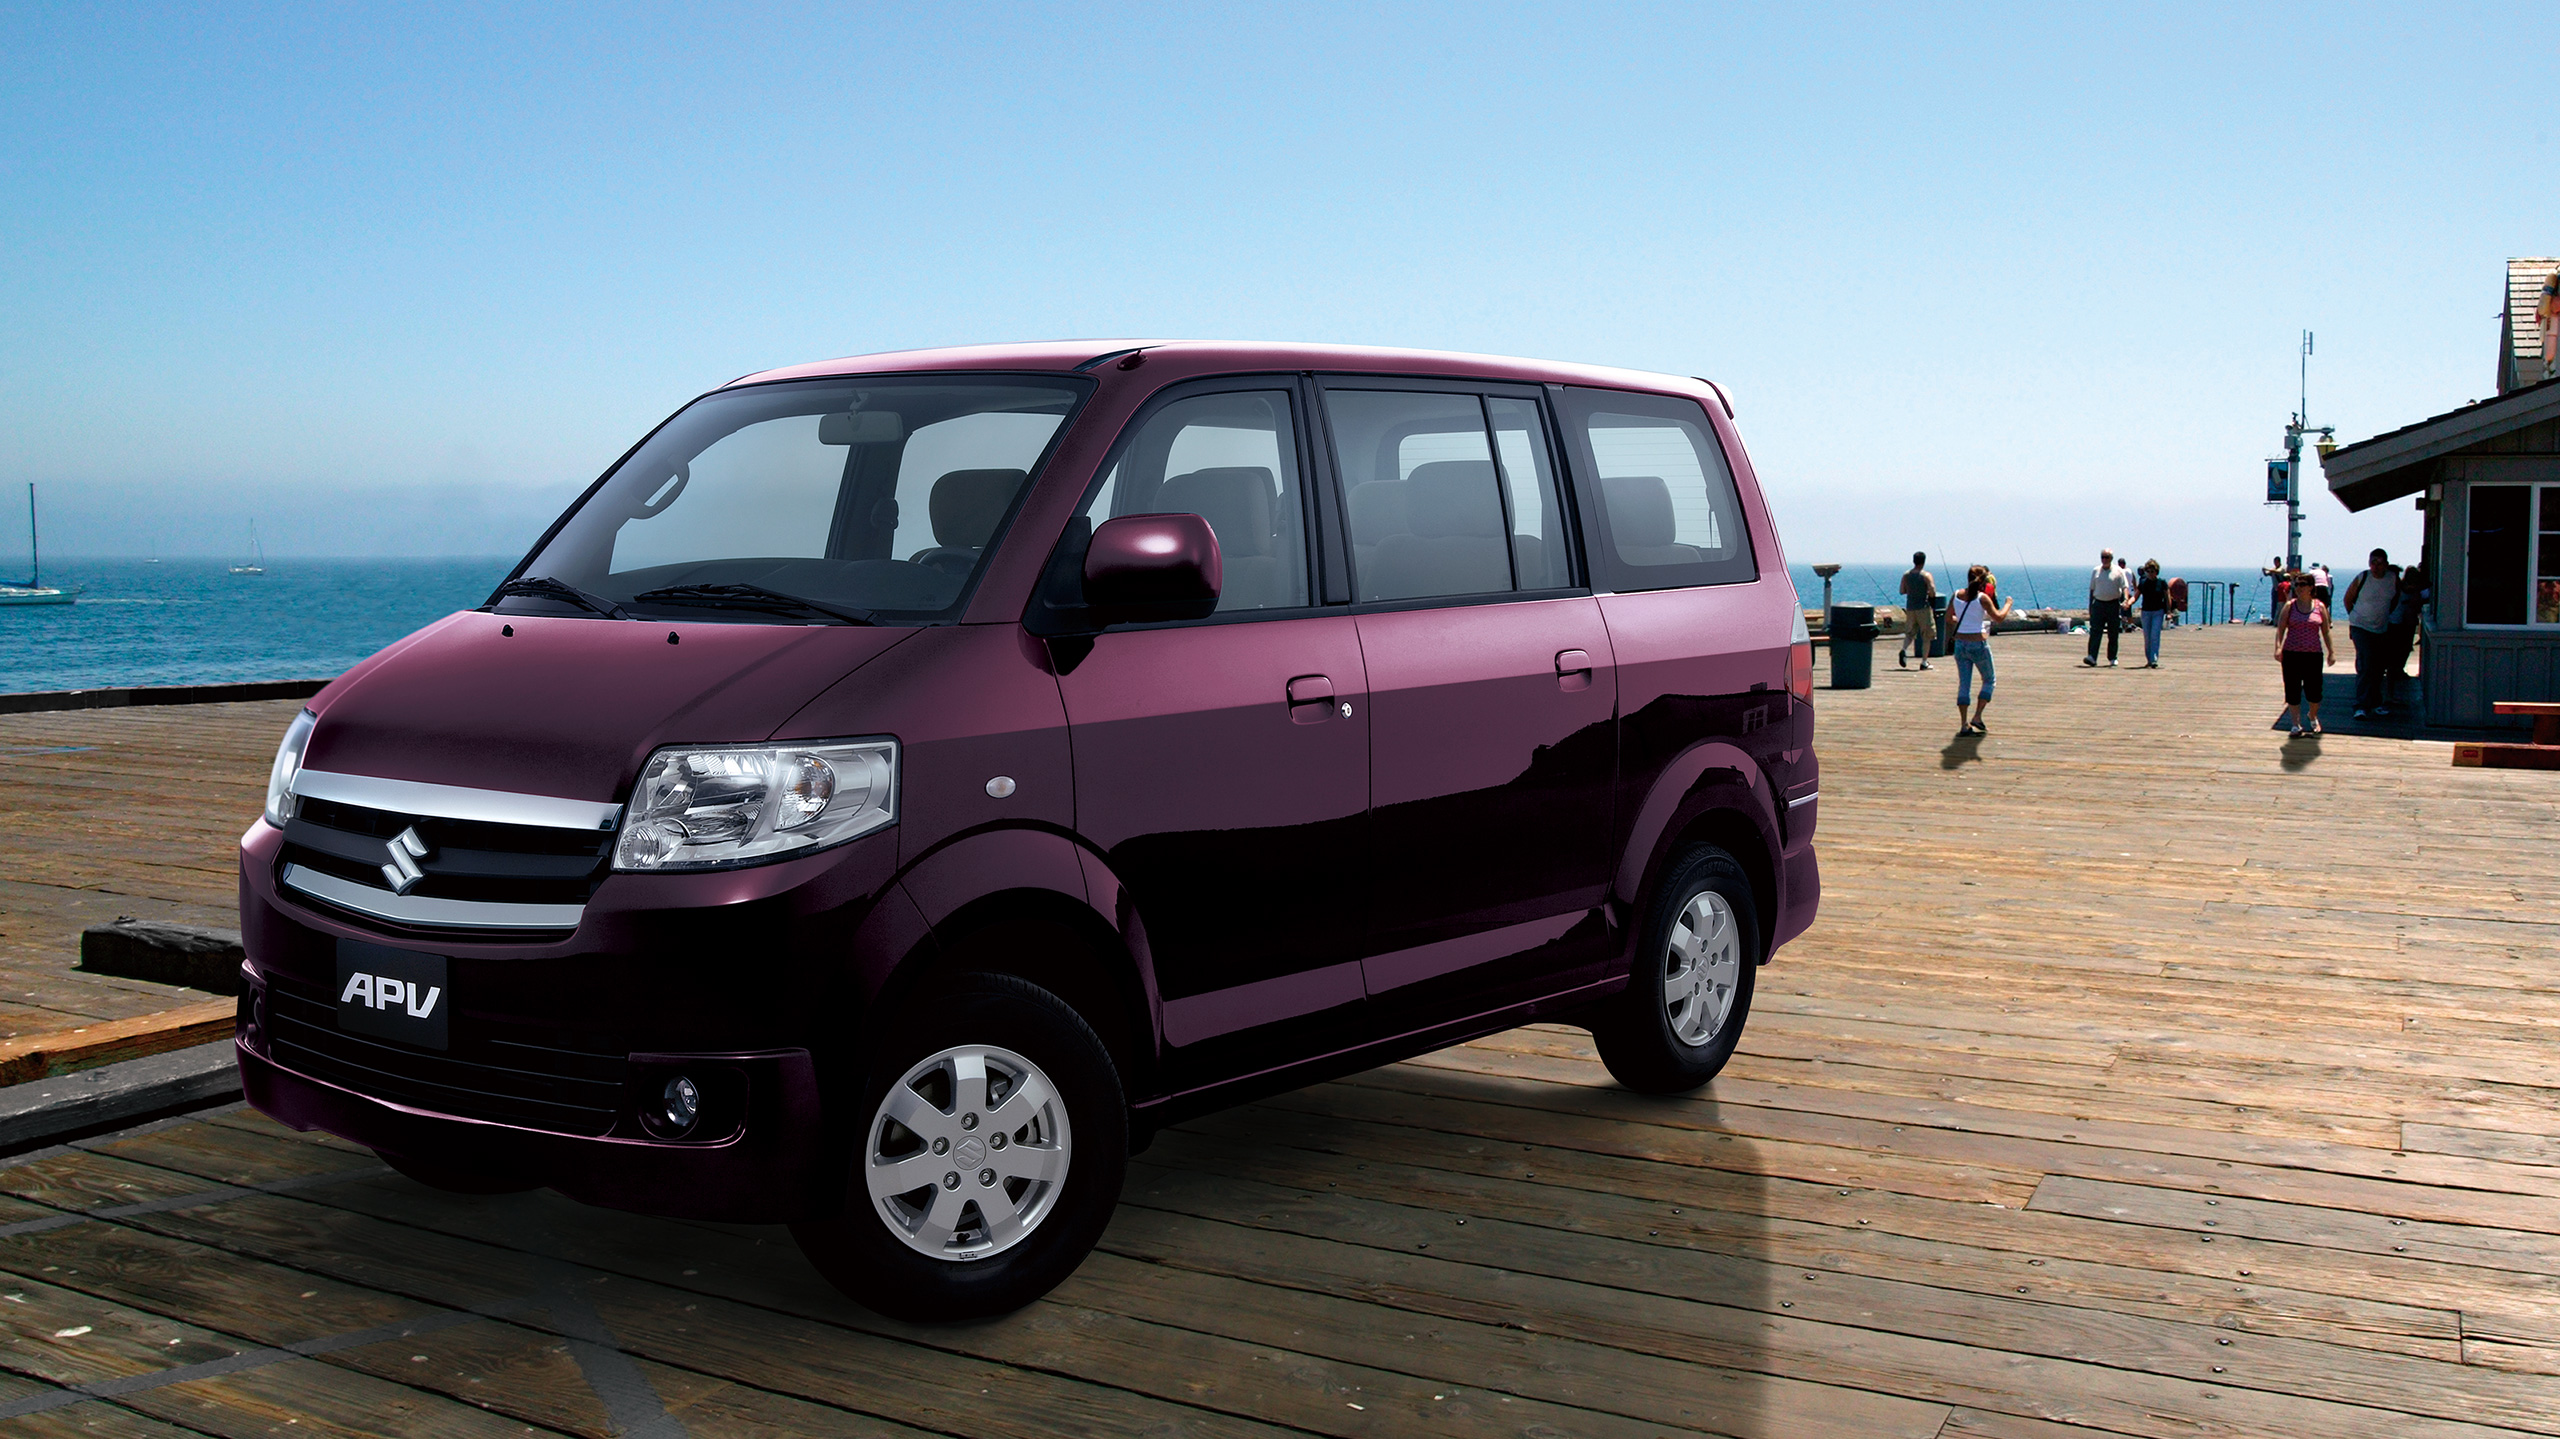 a-purple-APV-parked-near-the-ocean